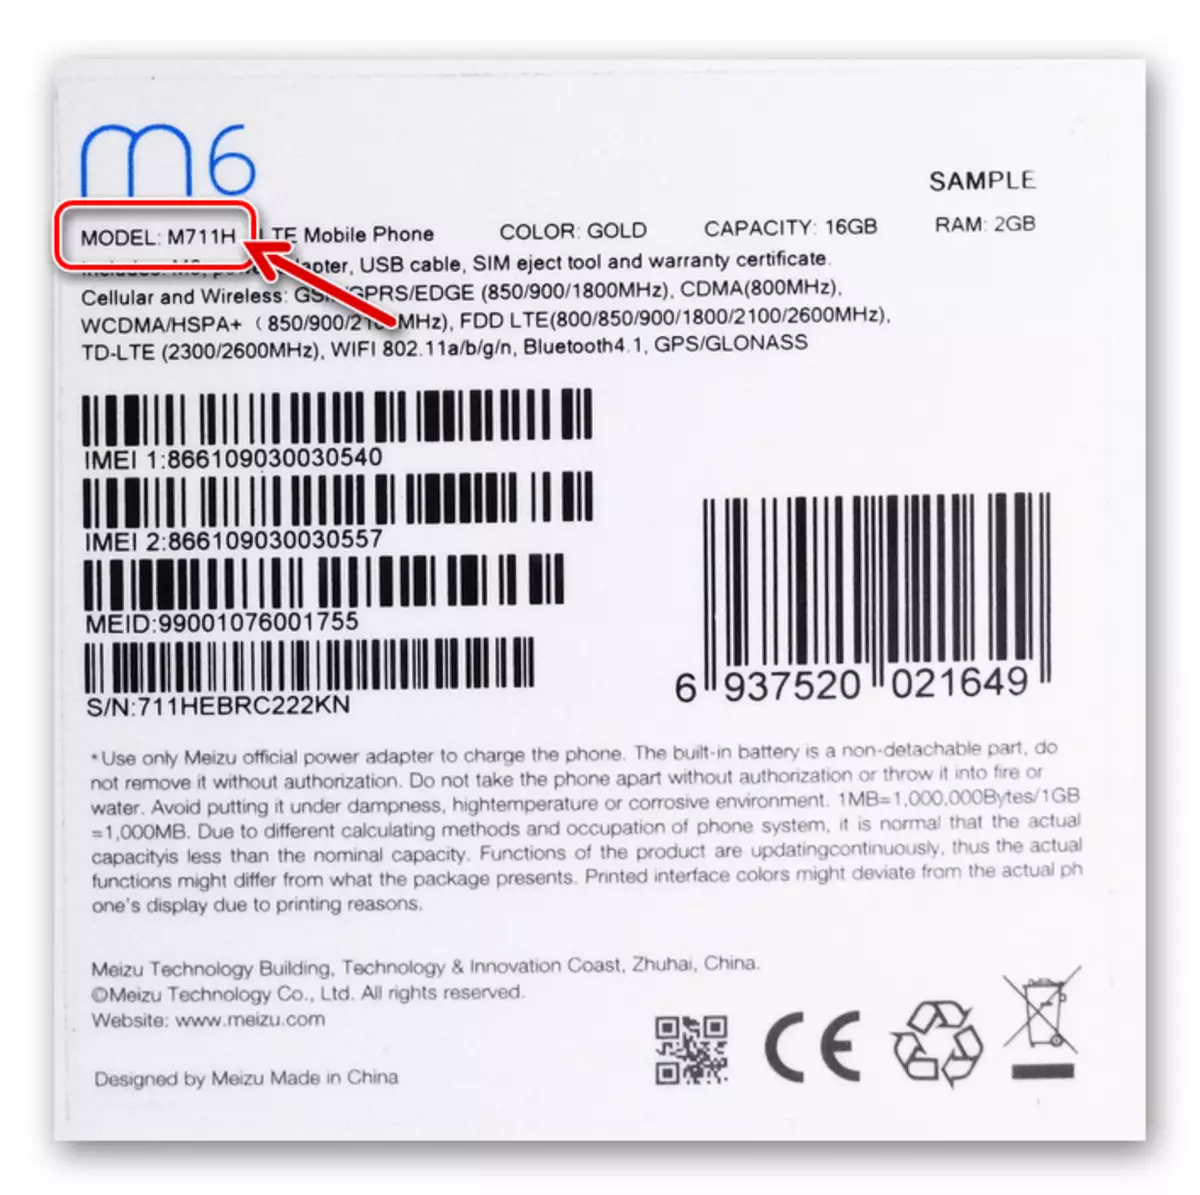 Pagbabago ng Meizu M6 ng smartphone sa packaging ng device